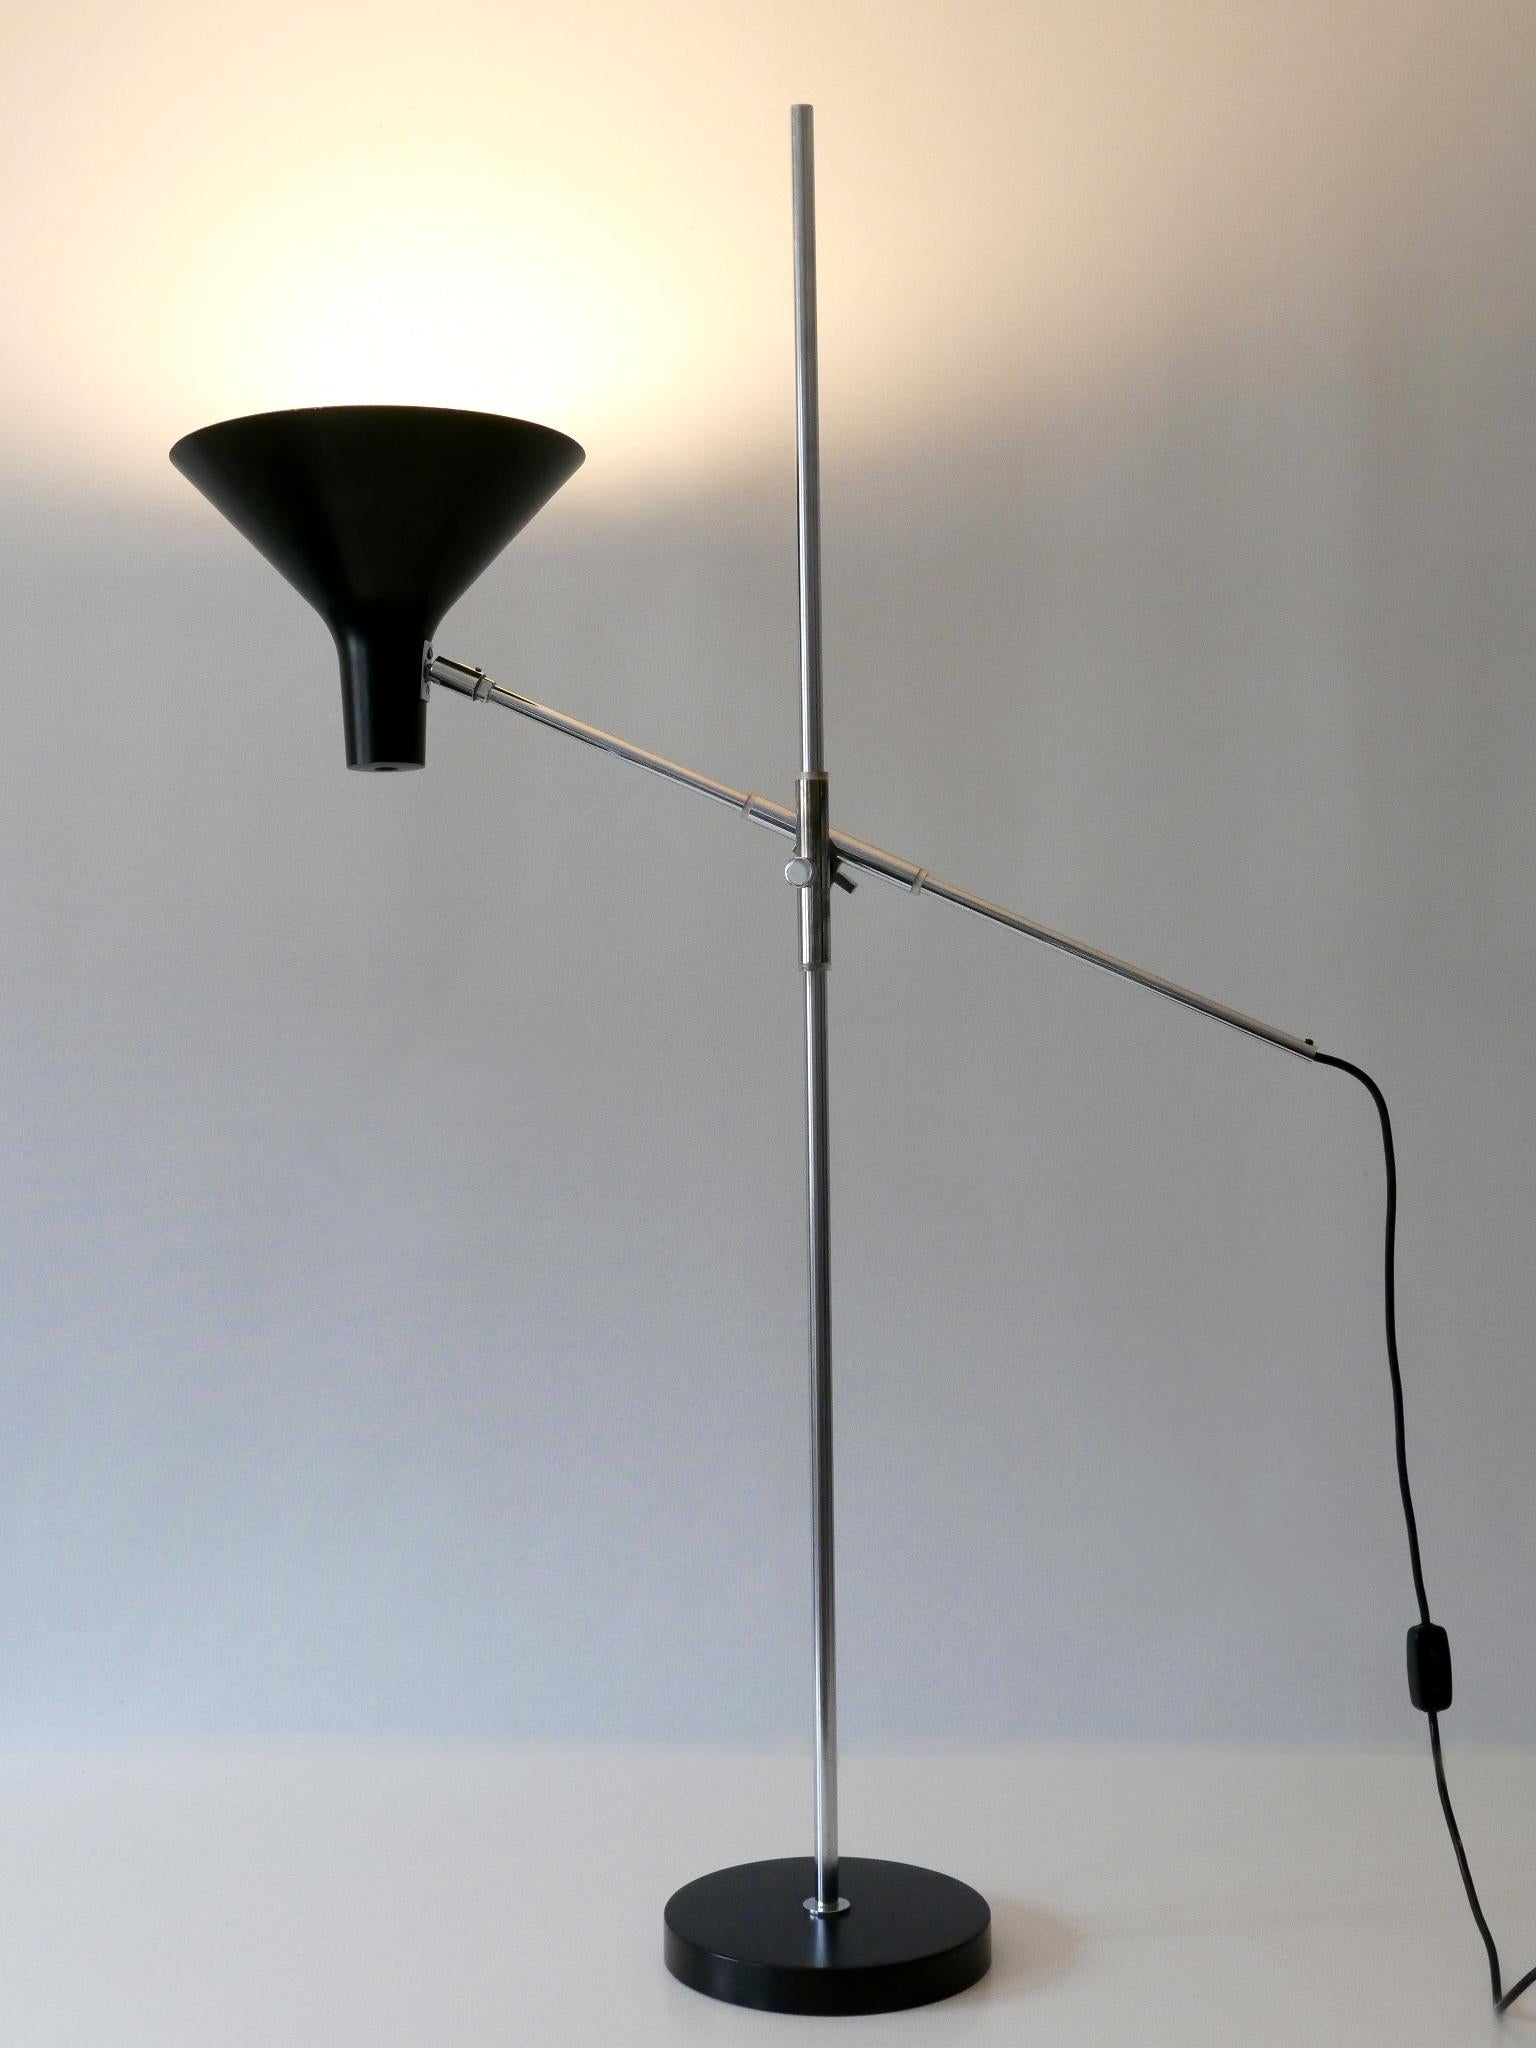 Rare et élégant lampadaire ou liseuse ajustable de style Mid-Century Modern Nr 8180. Conçu par Karl-Heinz Kinsky, 1962. Fabriqué par Gebrüder Cosack, Neheim-Hüsten, Allemagne, années 1960.

Réalisée en partie en tôle d'aluminium émaillée noire et